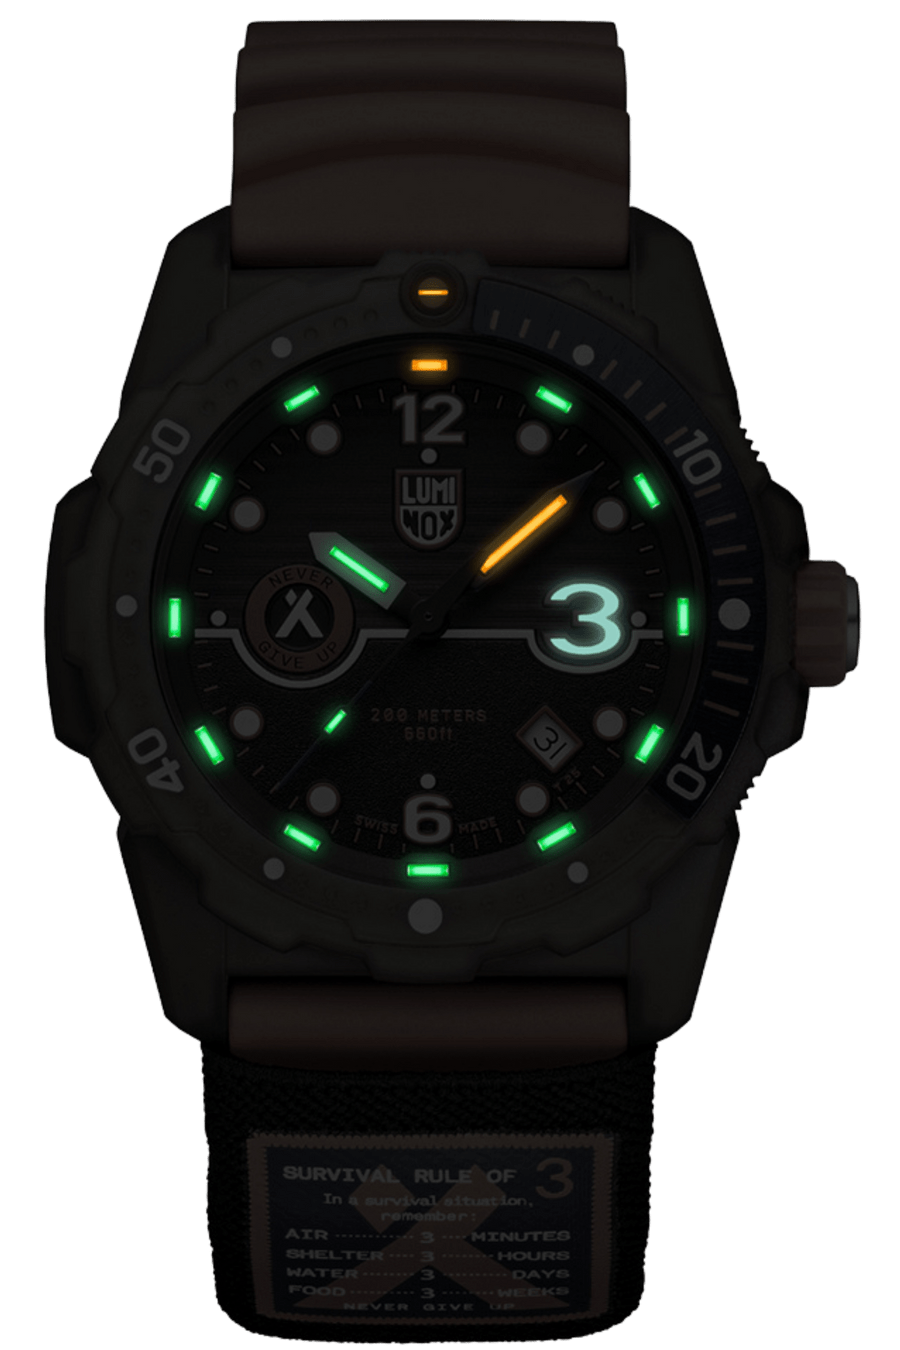 Bear Grylls x #TIDE Recycled Ocean Material - Rule of 3 Sea Series Watch